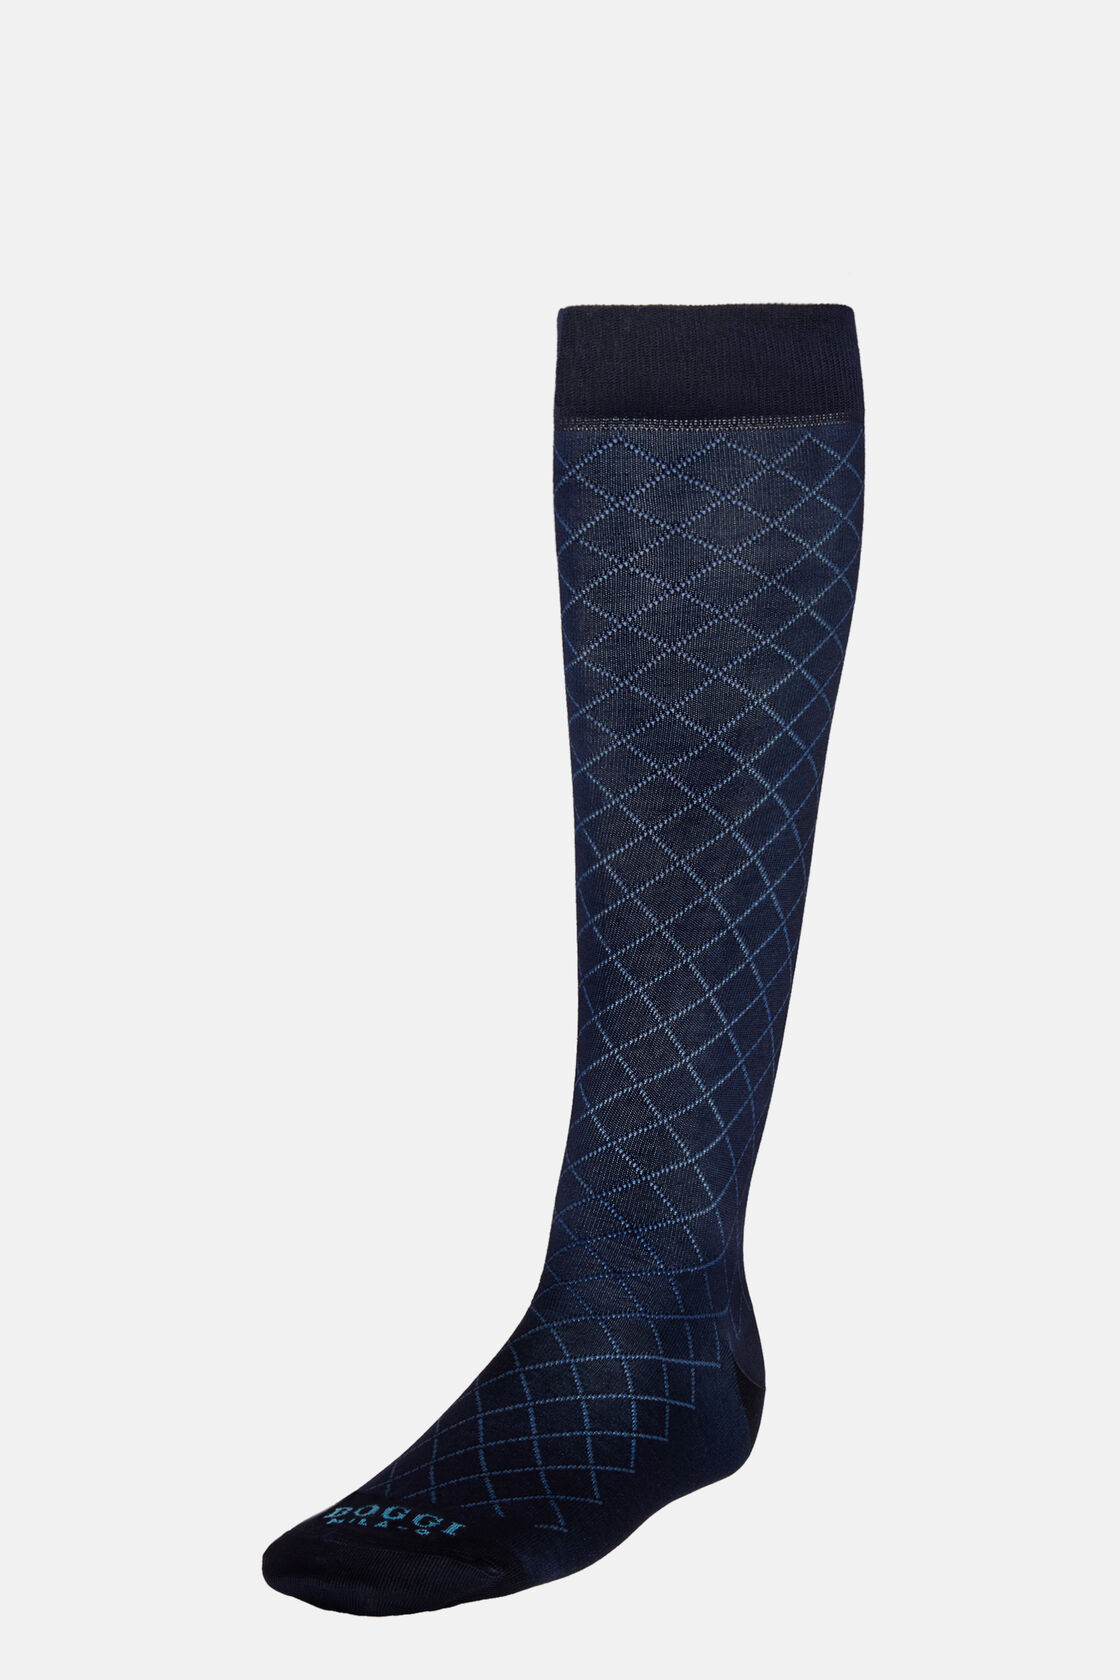 Κάλτσες με γεωμετρικά σχέδια από σύμμεικτο βαμβάκι, Navy blue, hi-res